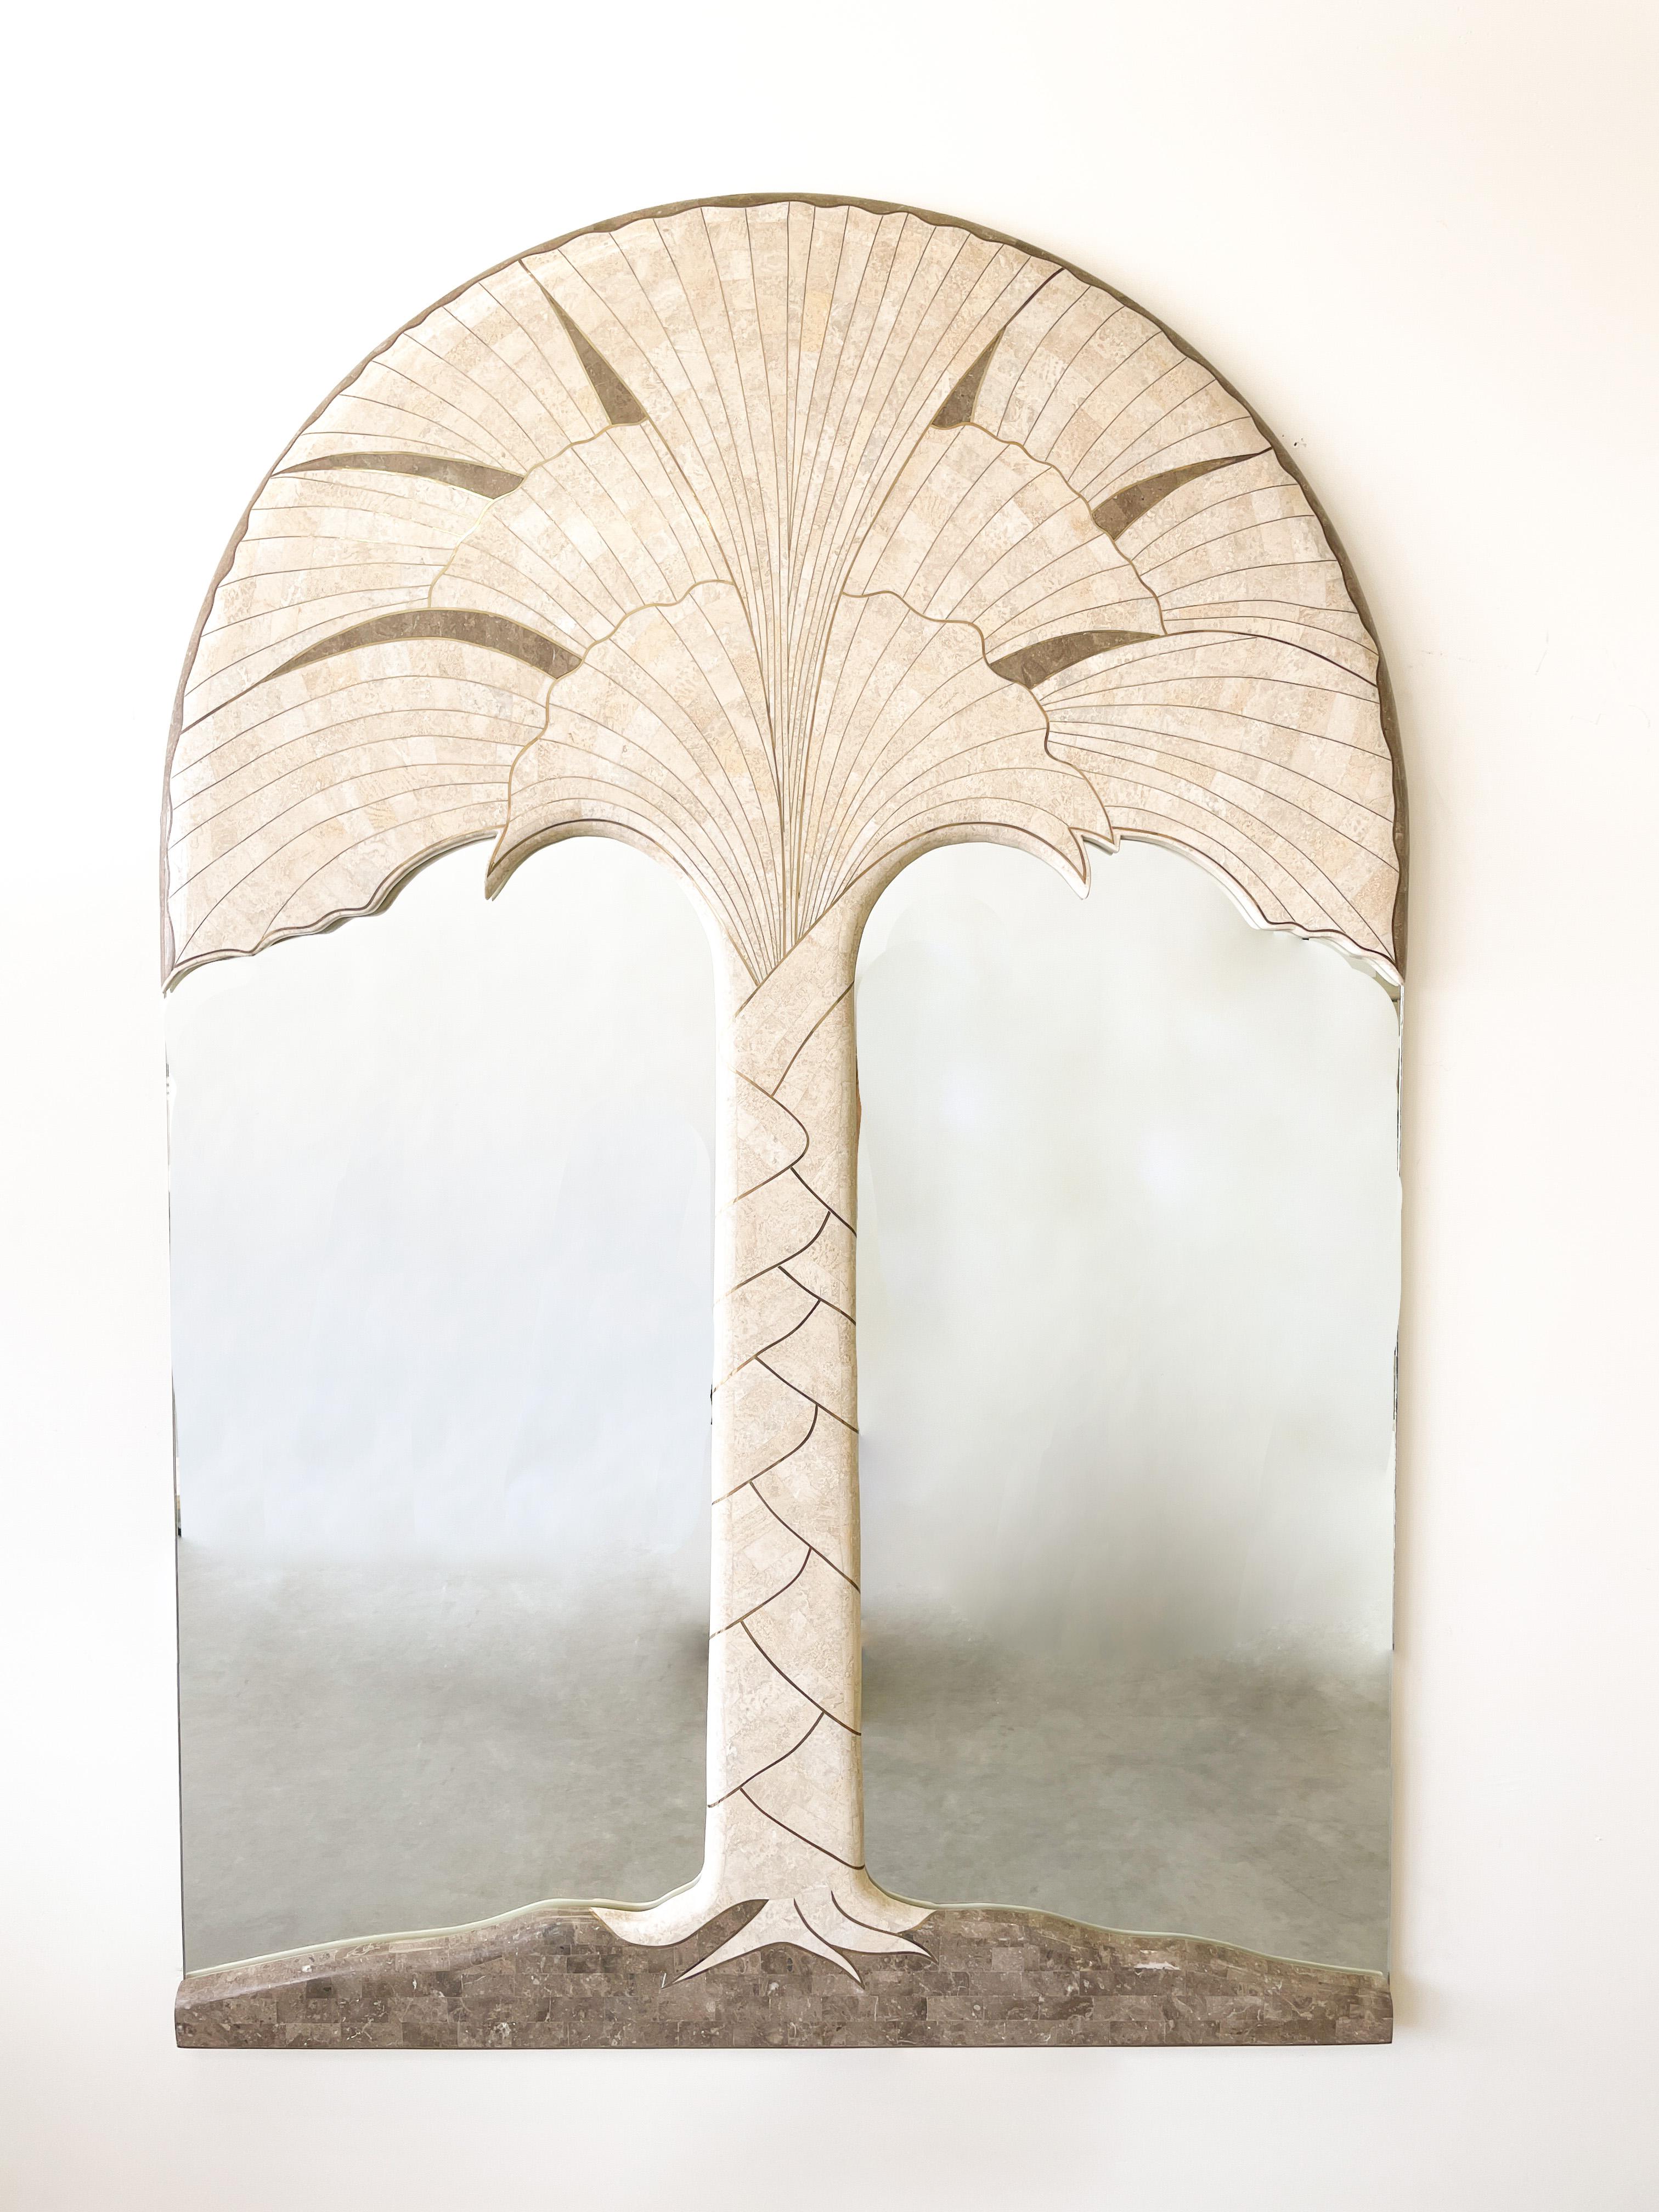 Vintage 80s, Tessellated Marble Stone Palm Tree With Brass Inlay Mirror.

Le miroir est en marbre tessellé avec incrustation de laiton.
Très lourd et très bien fabriqué.

Couleur du cadre : crème claire naturelle et laiton

Mesures :
Largeur : 48